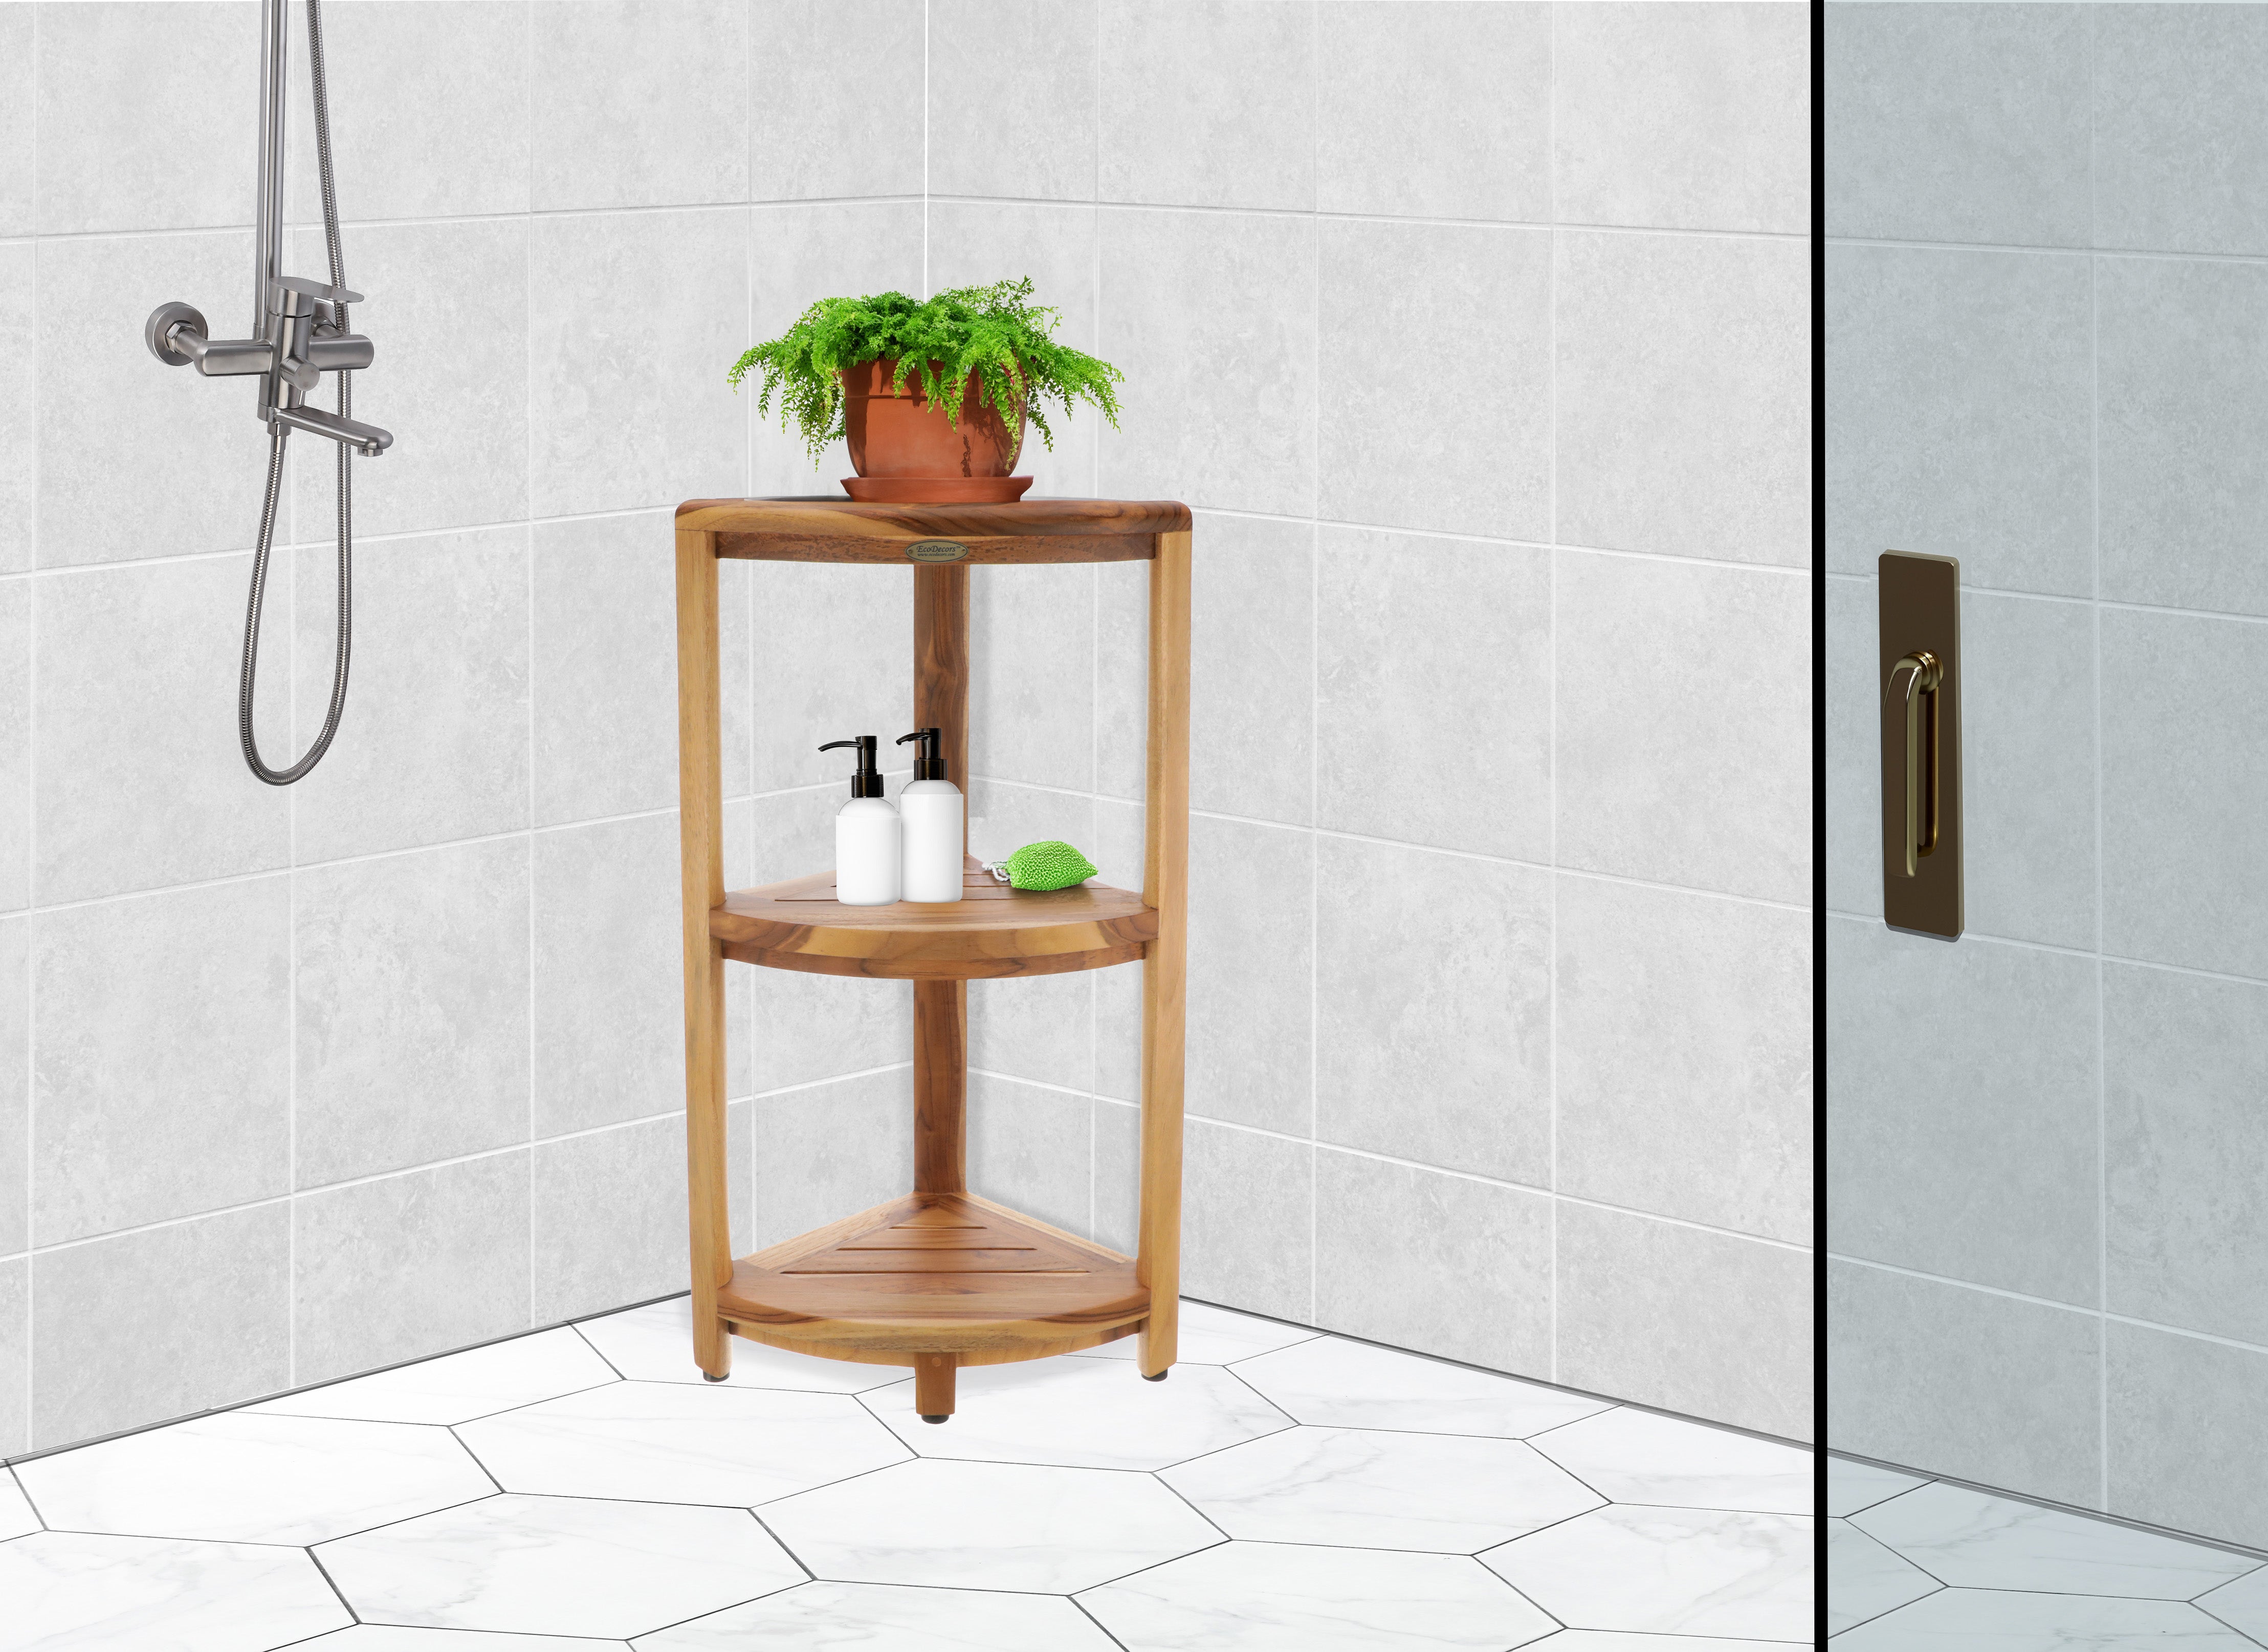 3-Tier Free Standing Corner Shower Caddy - Bathroom - Storage